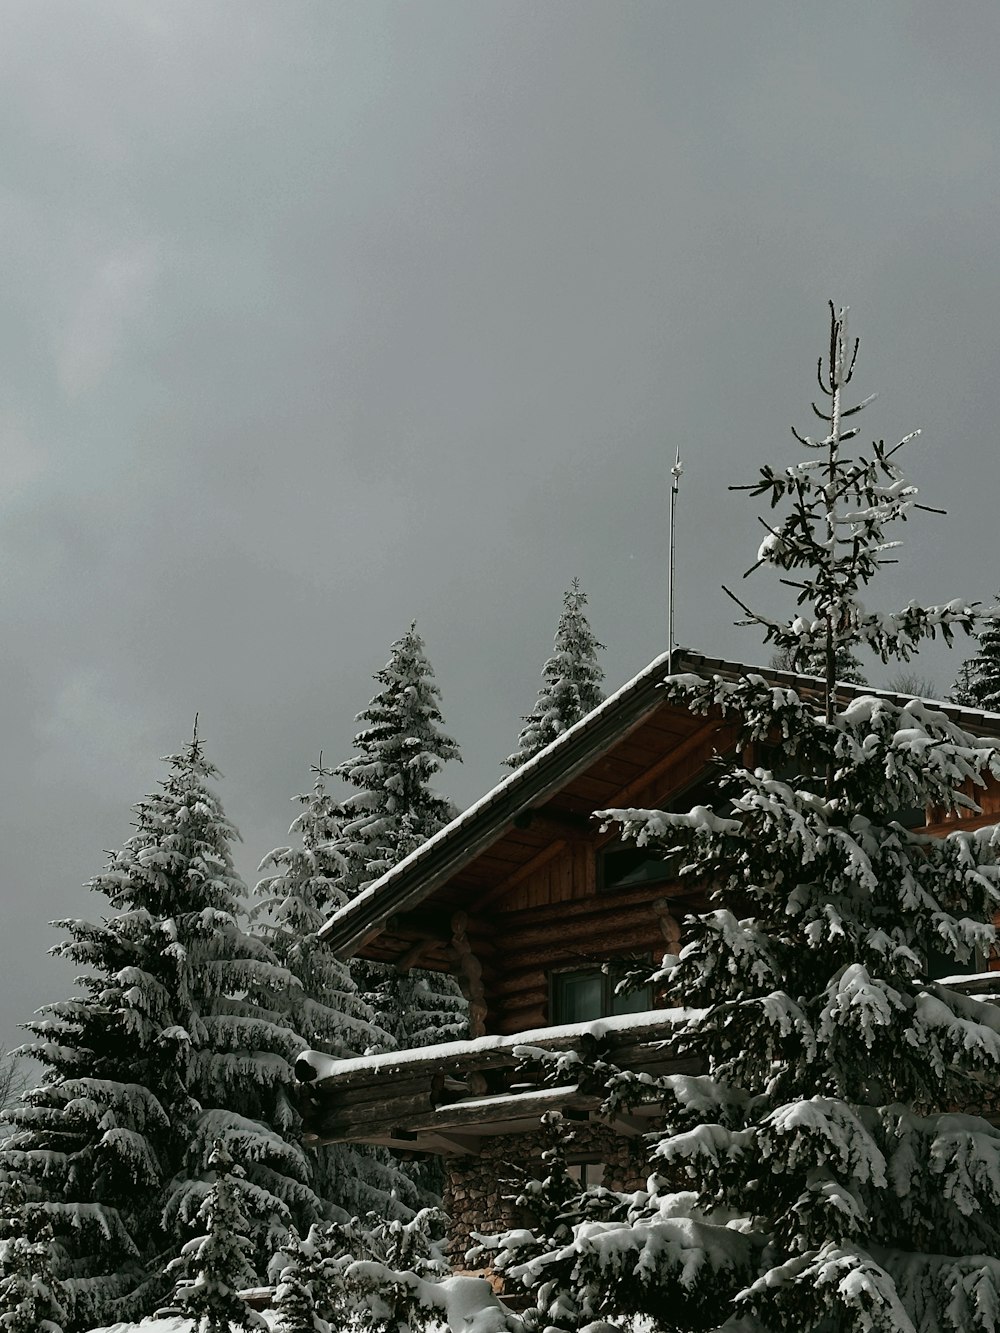 uma cabana na floresta com neve no chão